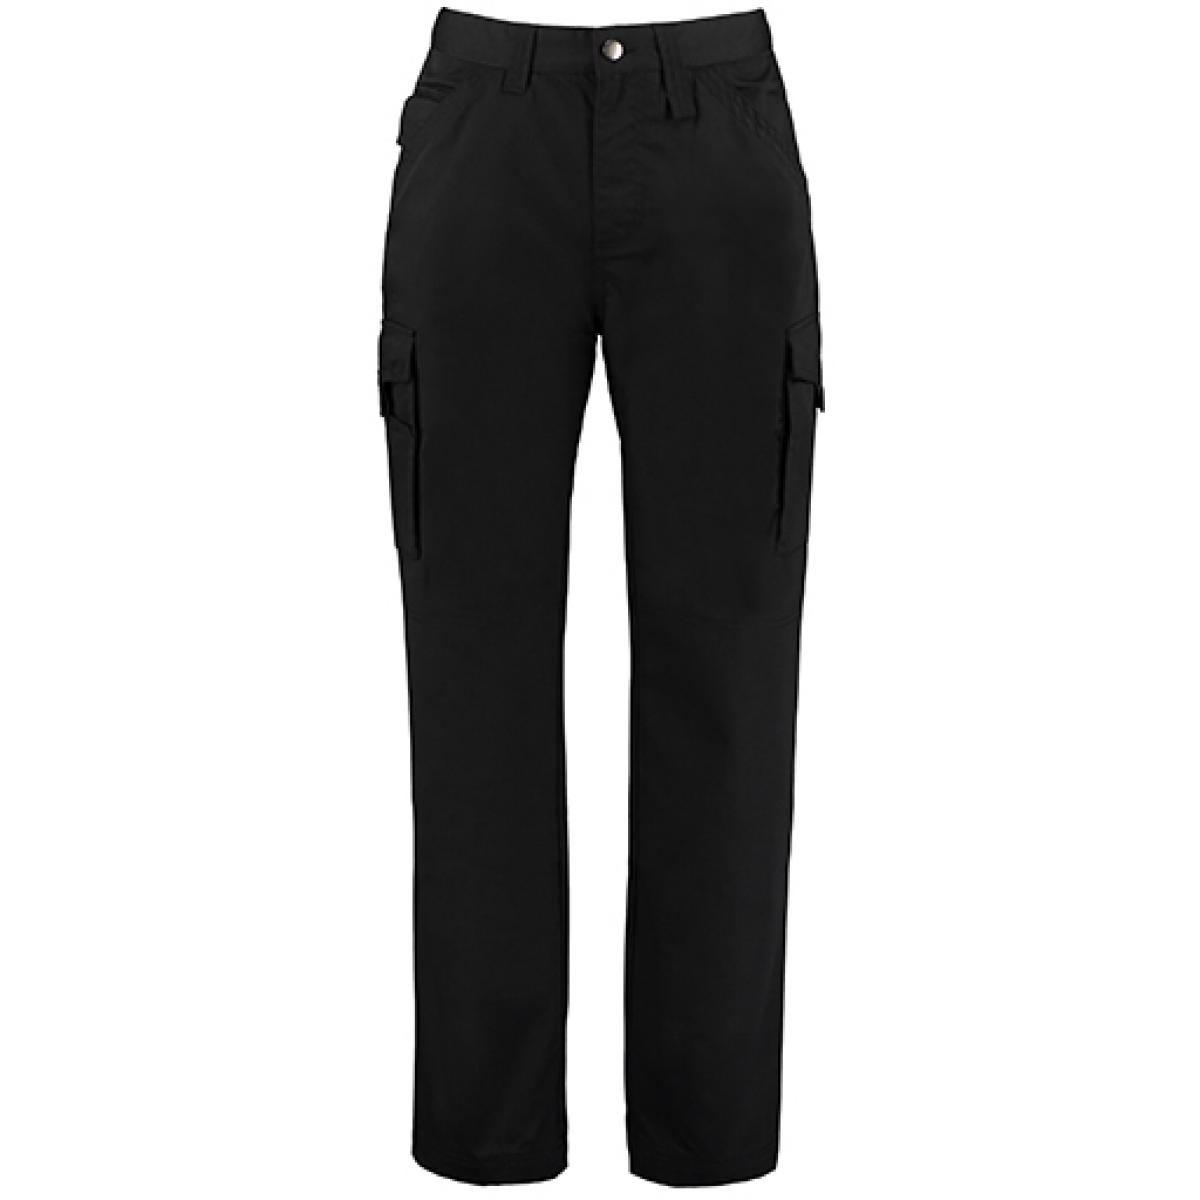 Hersteller: Kustom Kit Herstellernummer: KK806 Artikelbezeichnung: Workwear Trousers / Superwash® 60° / Teflonbeschichtet Farbe: Black